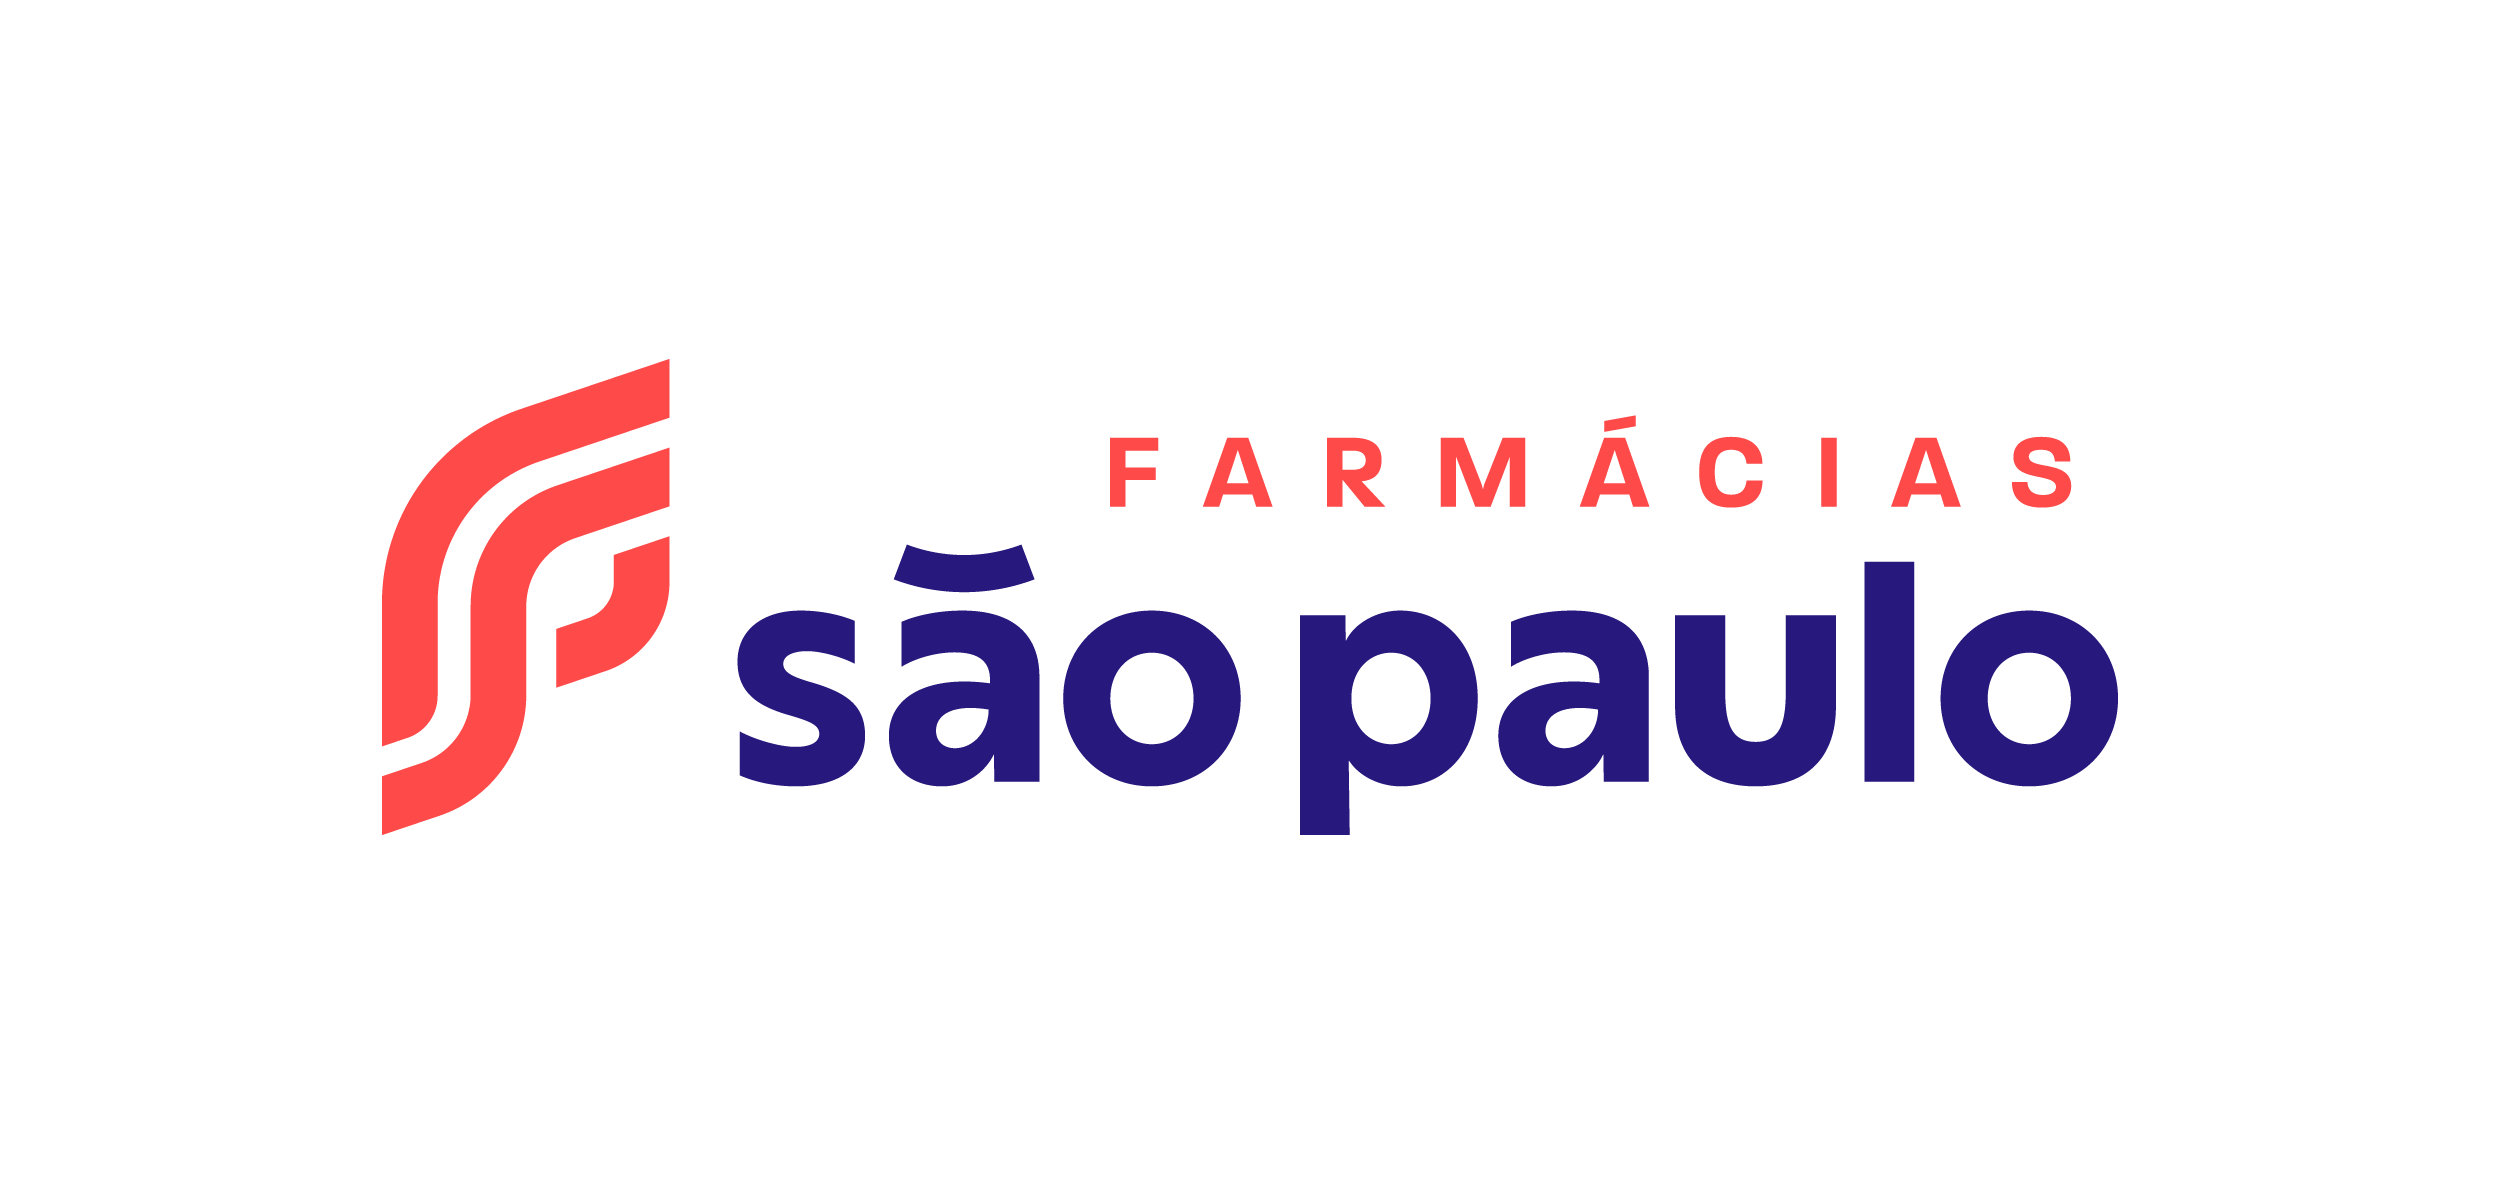 Logo das Farmácias São Paulo, onde fica em destaque o nome da nossa franquia usando as cores vermelha e azul, tendo também a letra F escrita de forma mais curva e estilizada, ela é o simbolo da nossa franquia